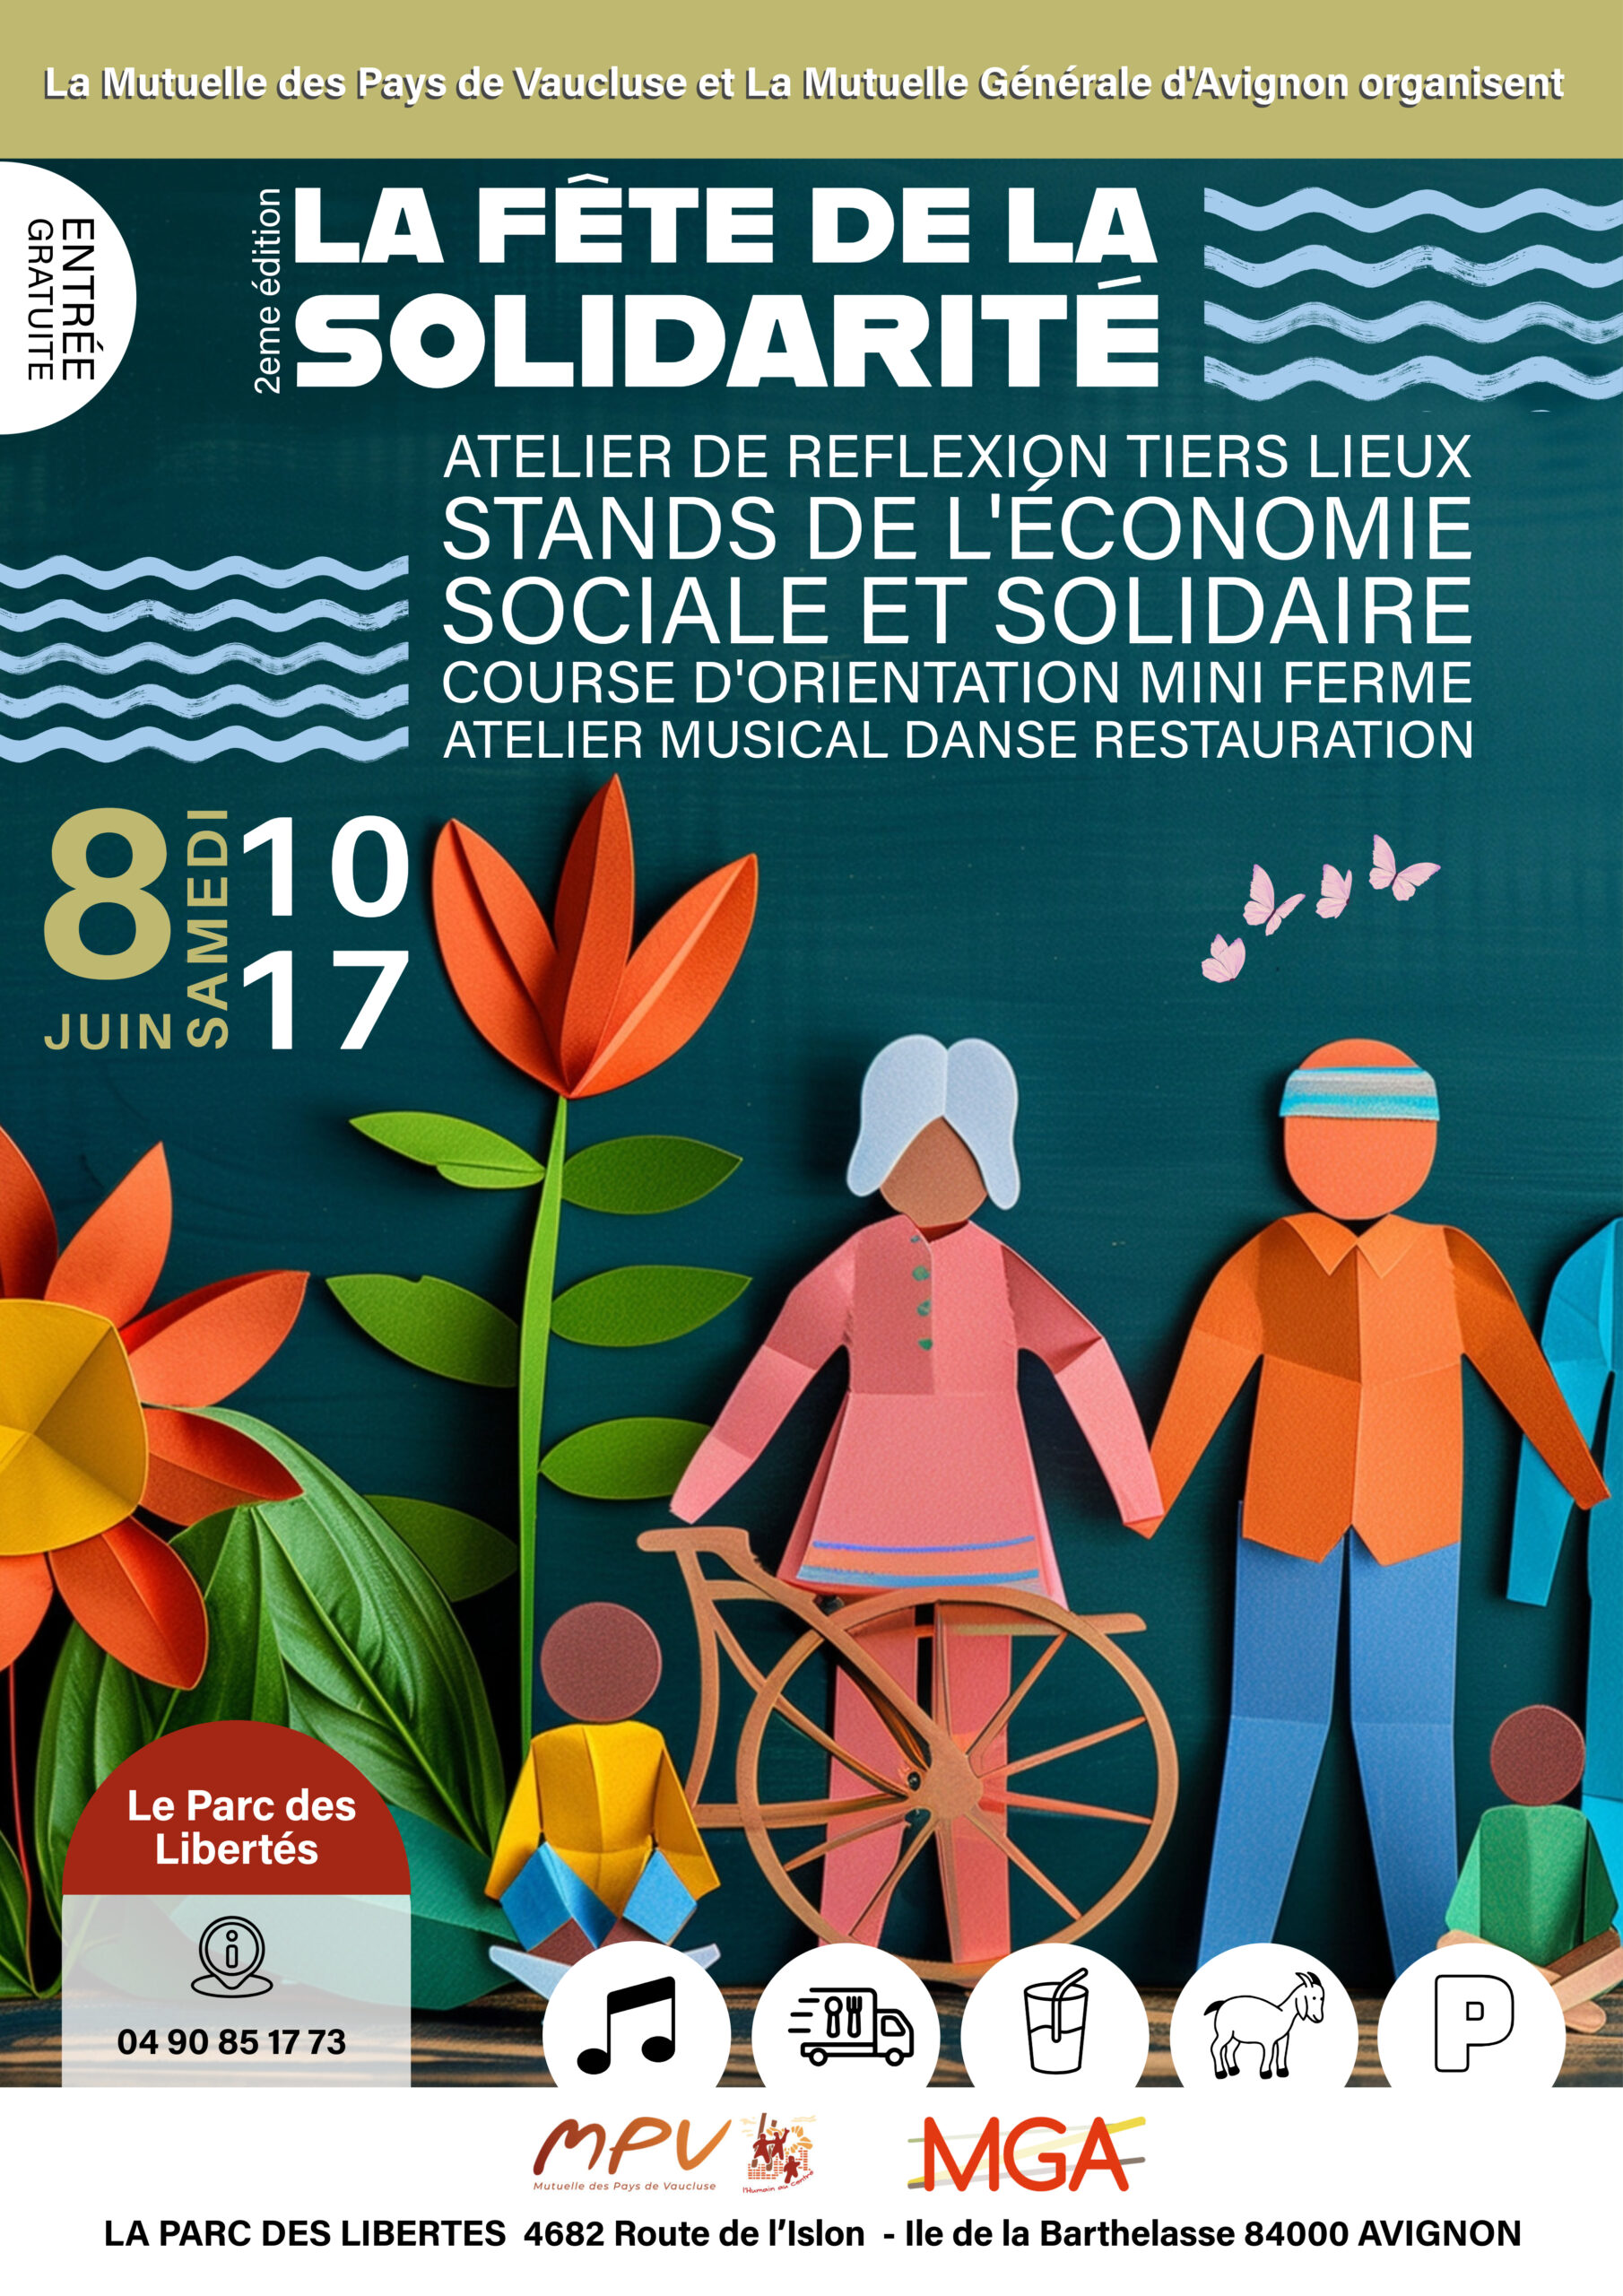 La Fête de la Solidarité, Parc des Libertés